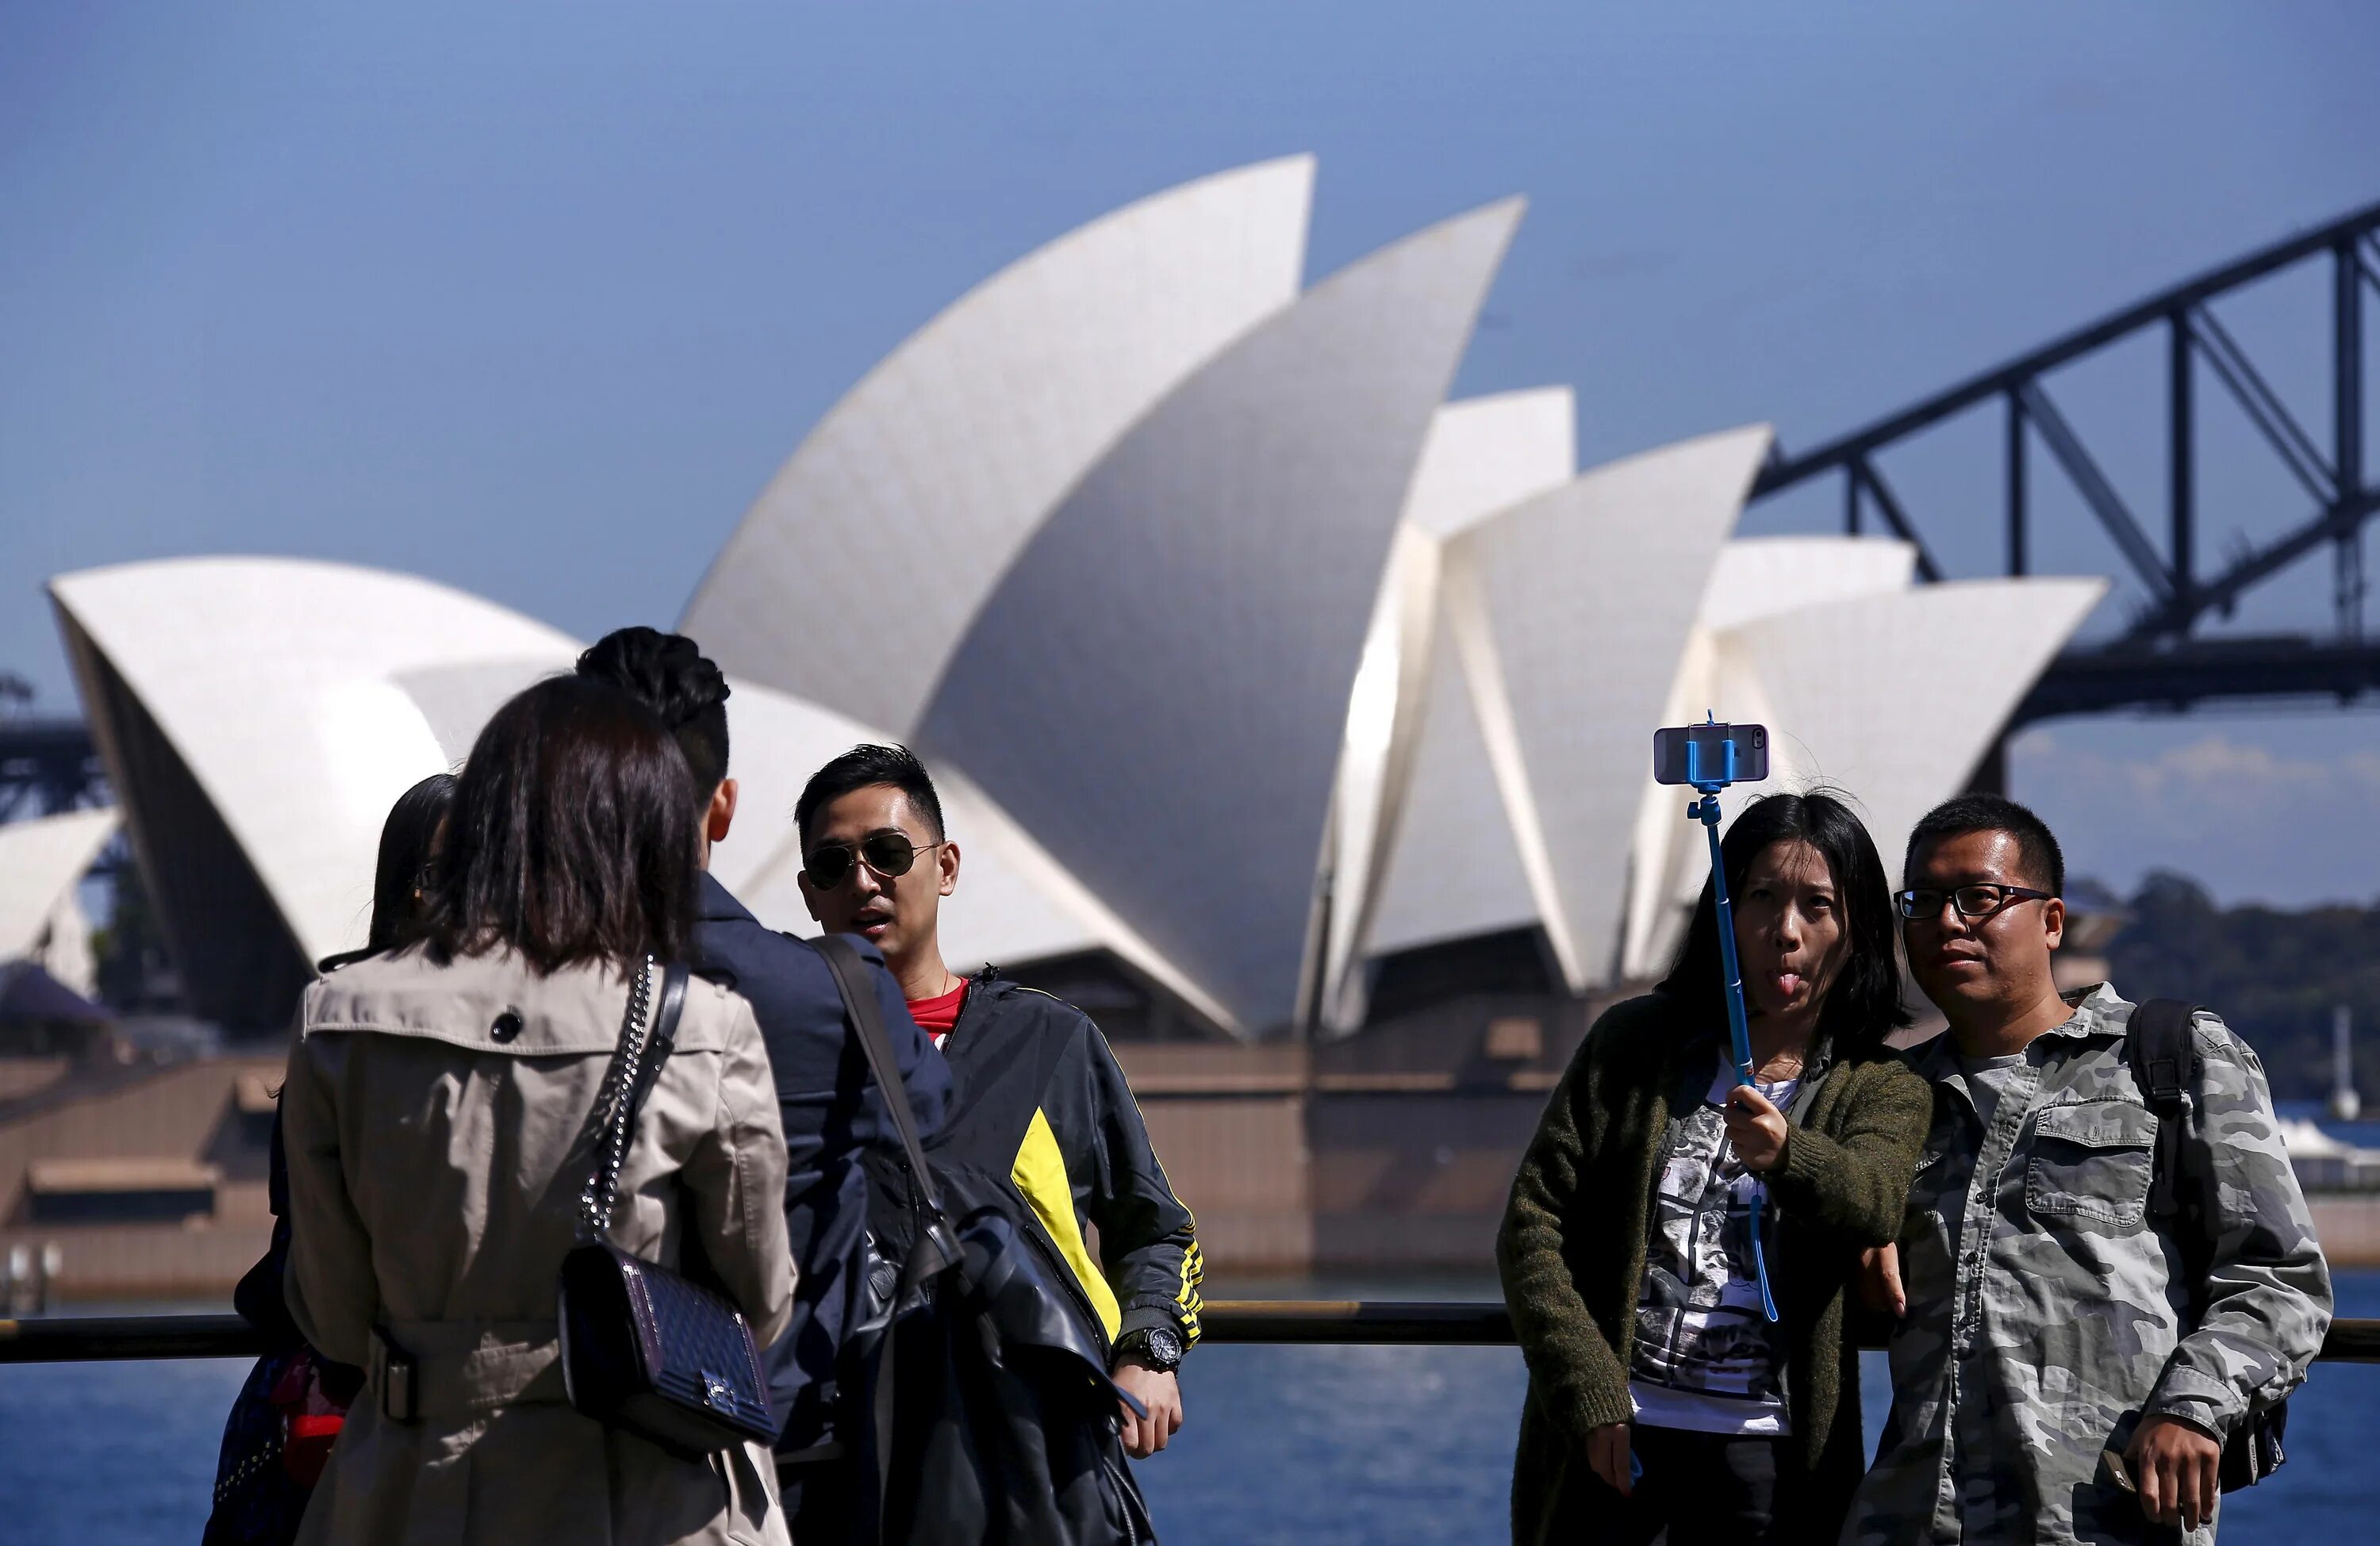 1 группа туристов из австралии. Австралия туризм. Туристы в Австралии. Туристы в Сиднее. Культурно-познавательный туризм Австралия.